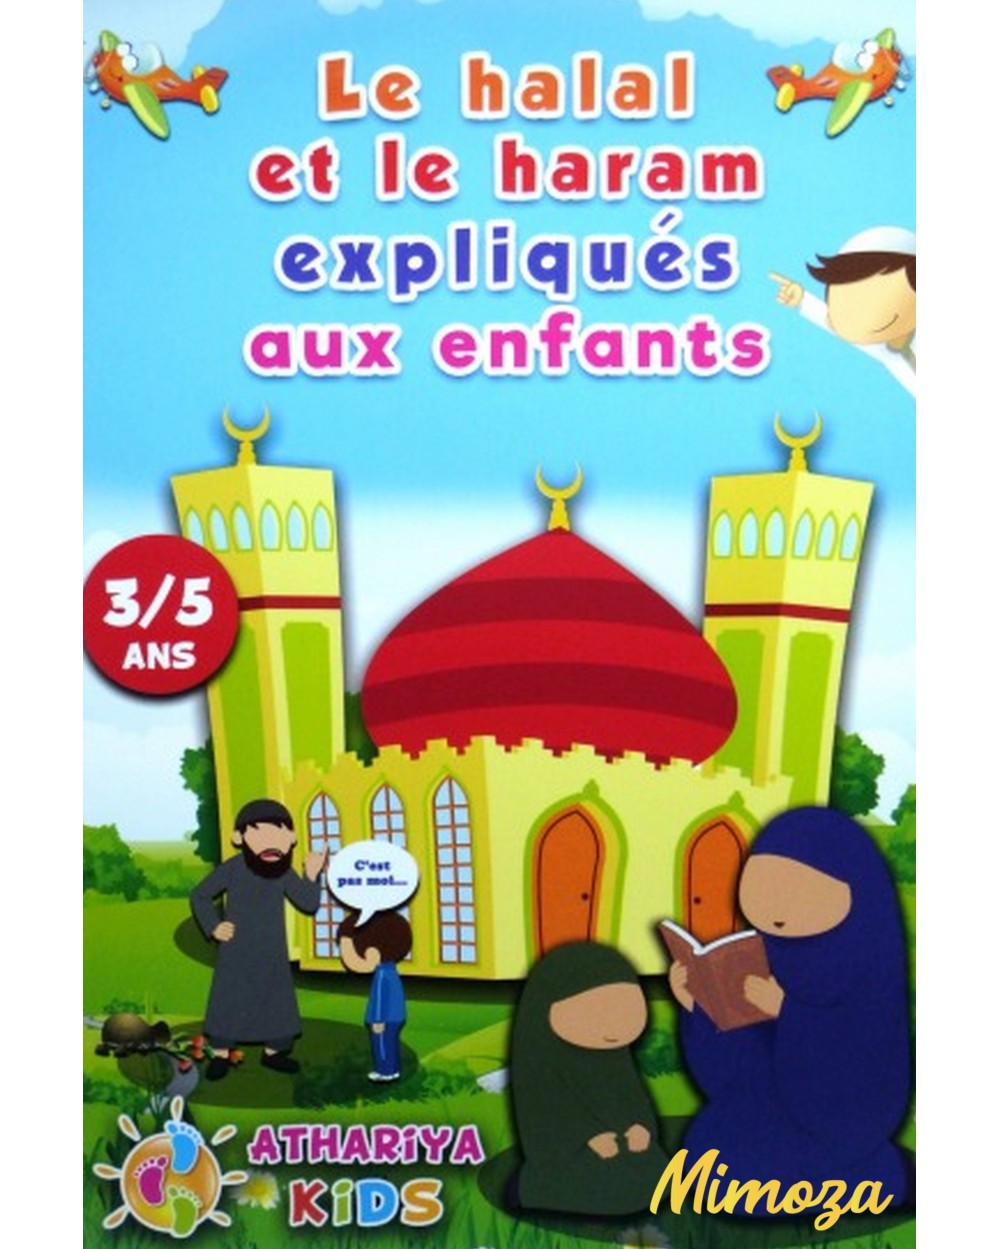 Le halal et le haram expliqués aux enfants - 3/5 ans